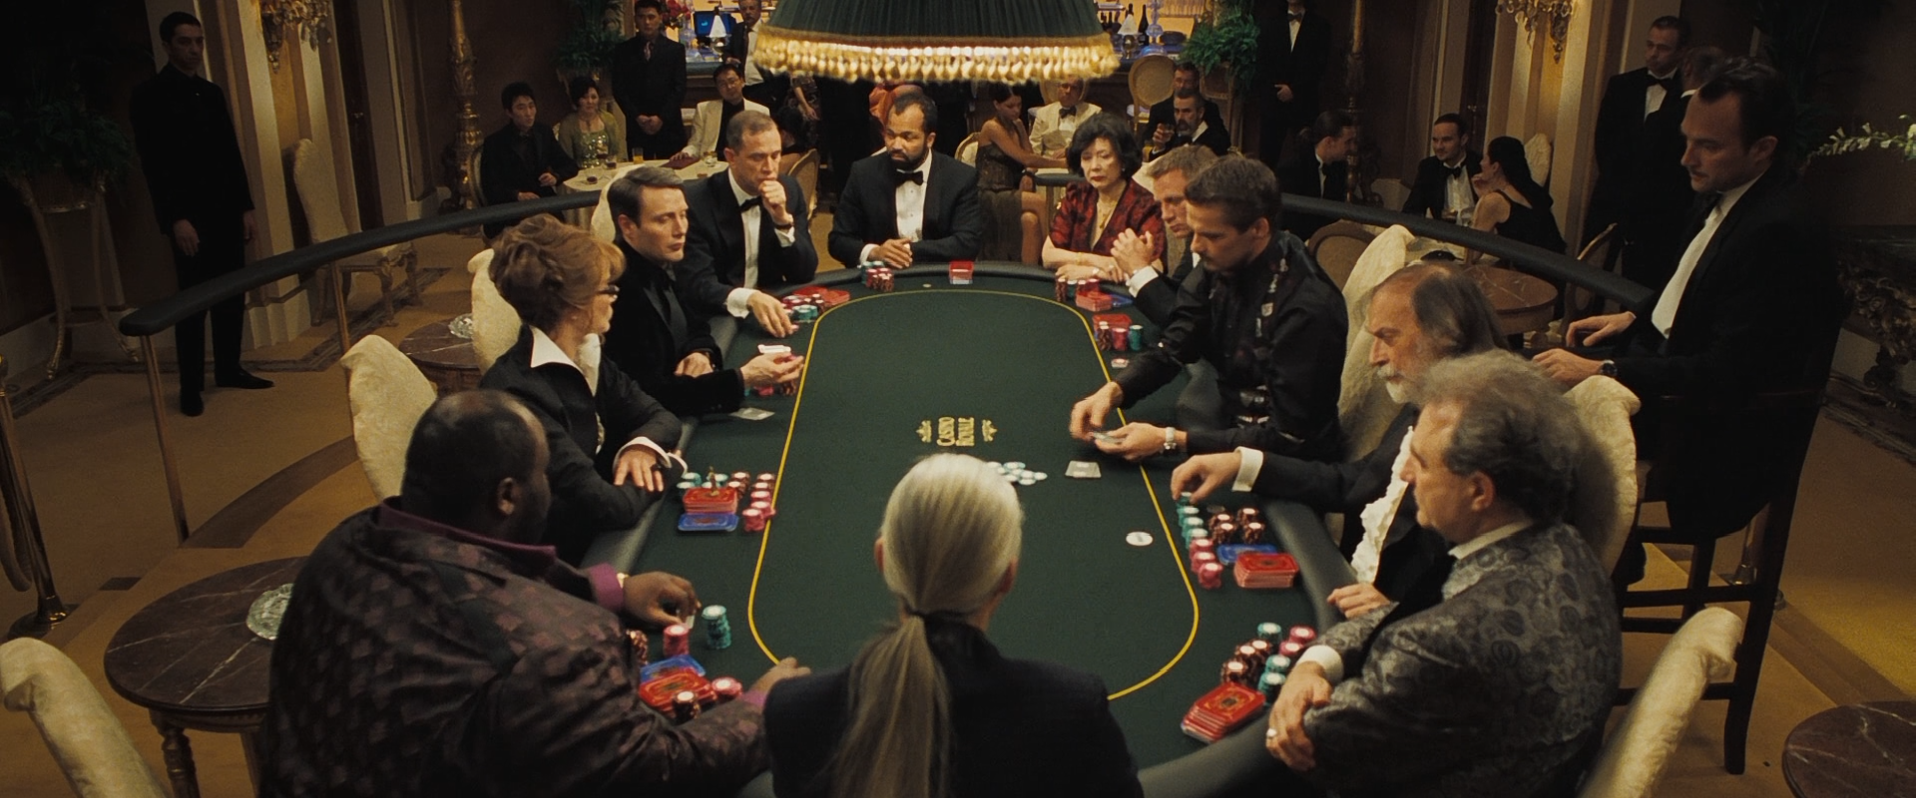 casino royal poker scene